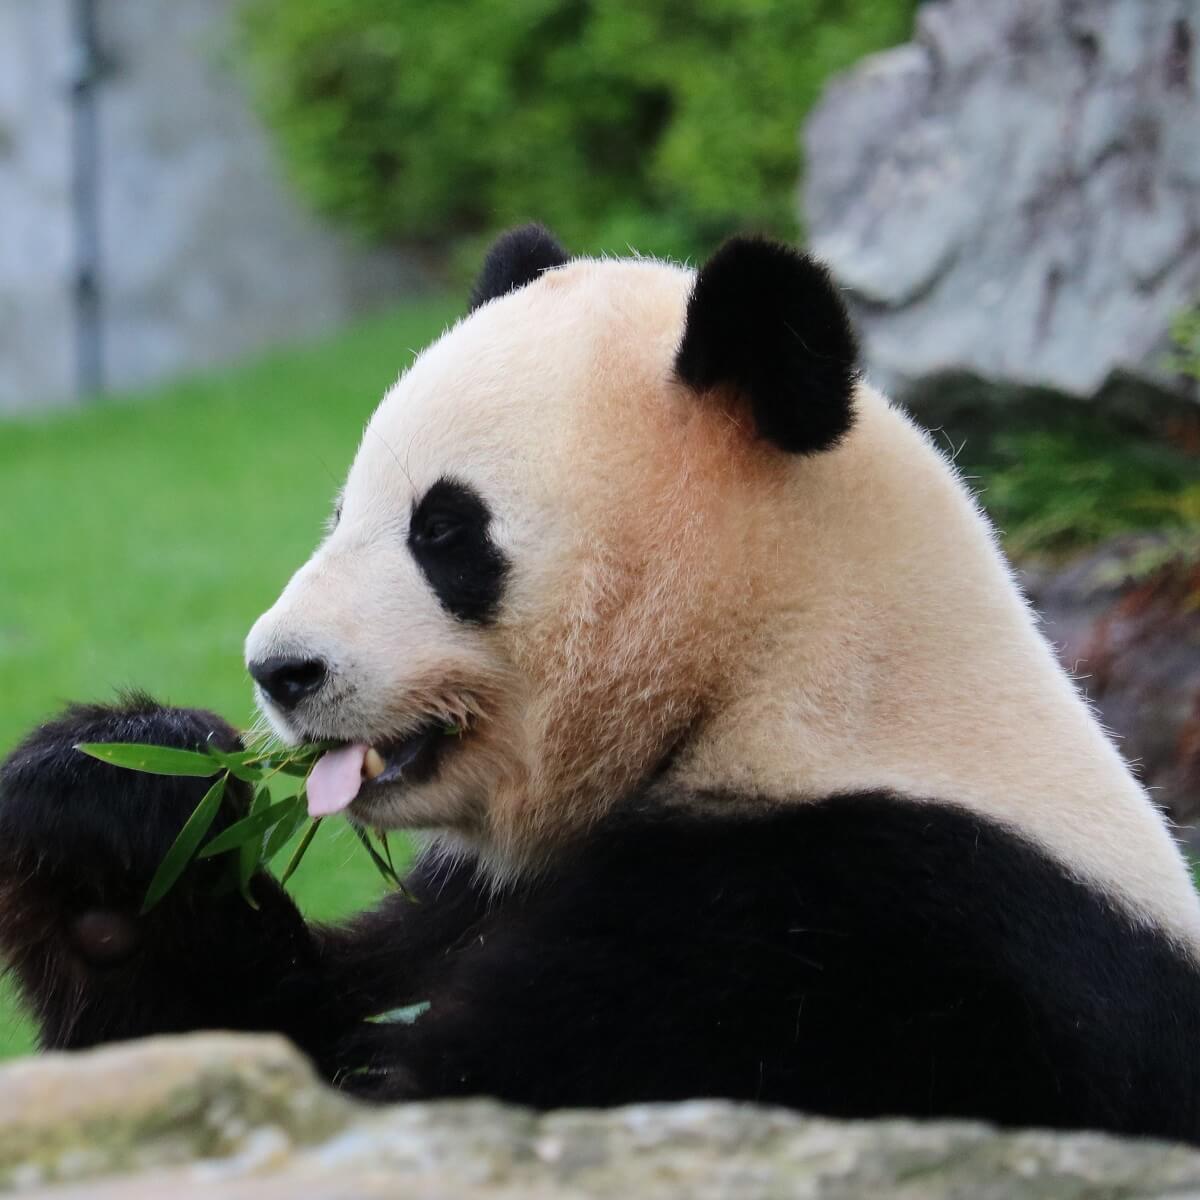 ジャイアントパンダ 生態と特徴 パンダのなぜ なに がわかる記事 Zoo Zoo Diary